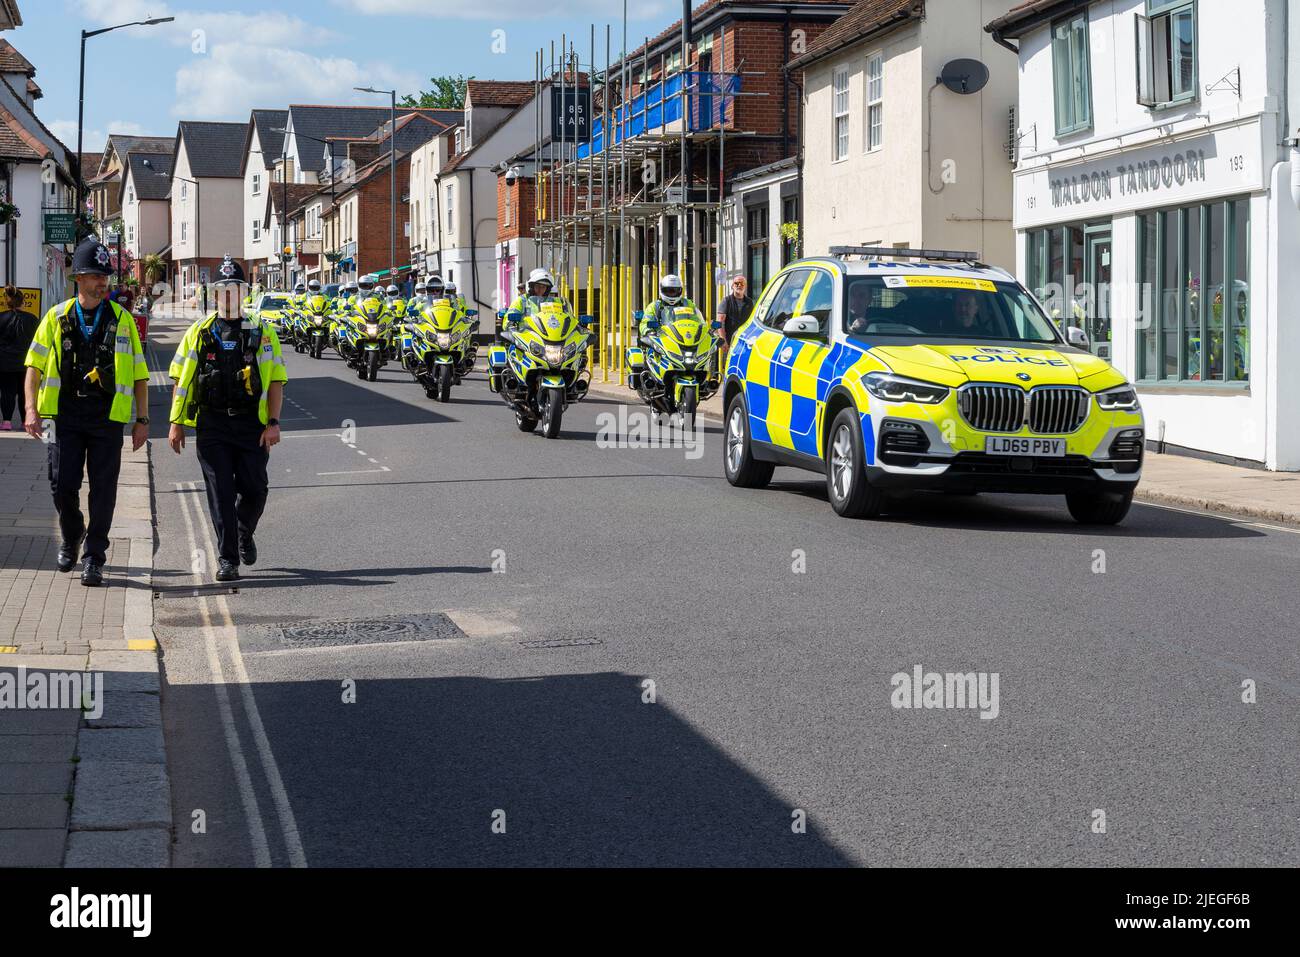 Polizeiautos und -Motorräder in Maldon, nachdem sie die rollenden Straßensperren für die Radrennetappe RideLondon Classique durch Essex in Betrieb genommen hatten. Polizeiarbeit Stockfoto